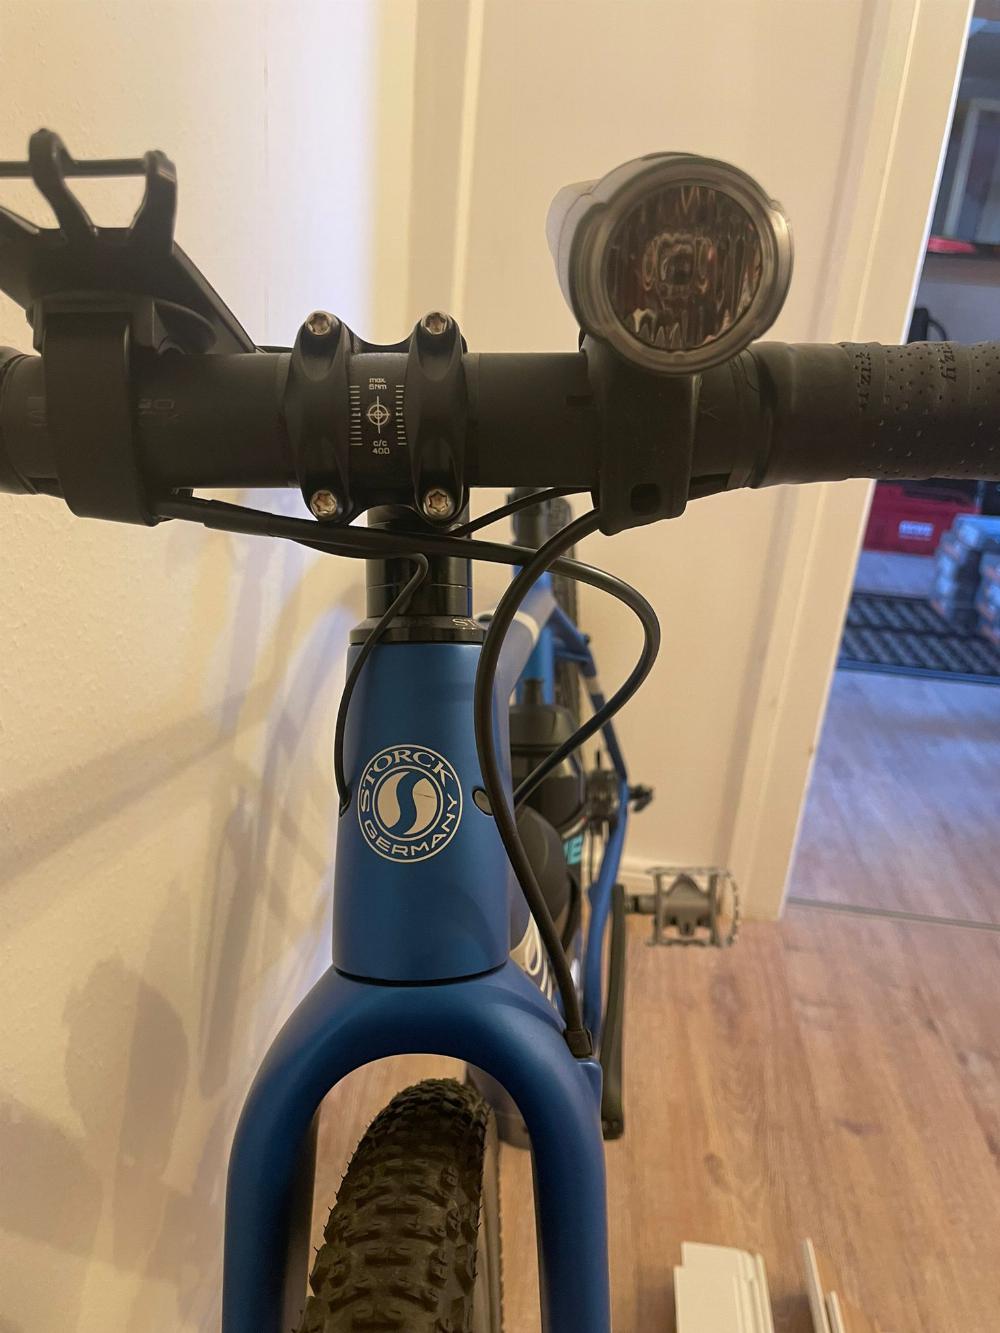 Fahrrad verkaufen STORCK Grix Pro E blue Ankauf